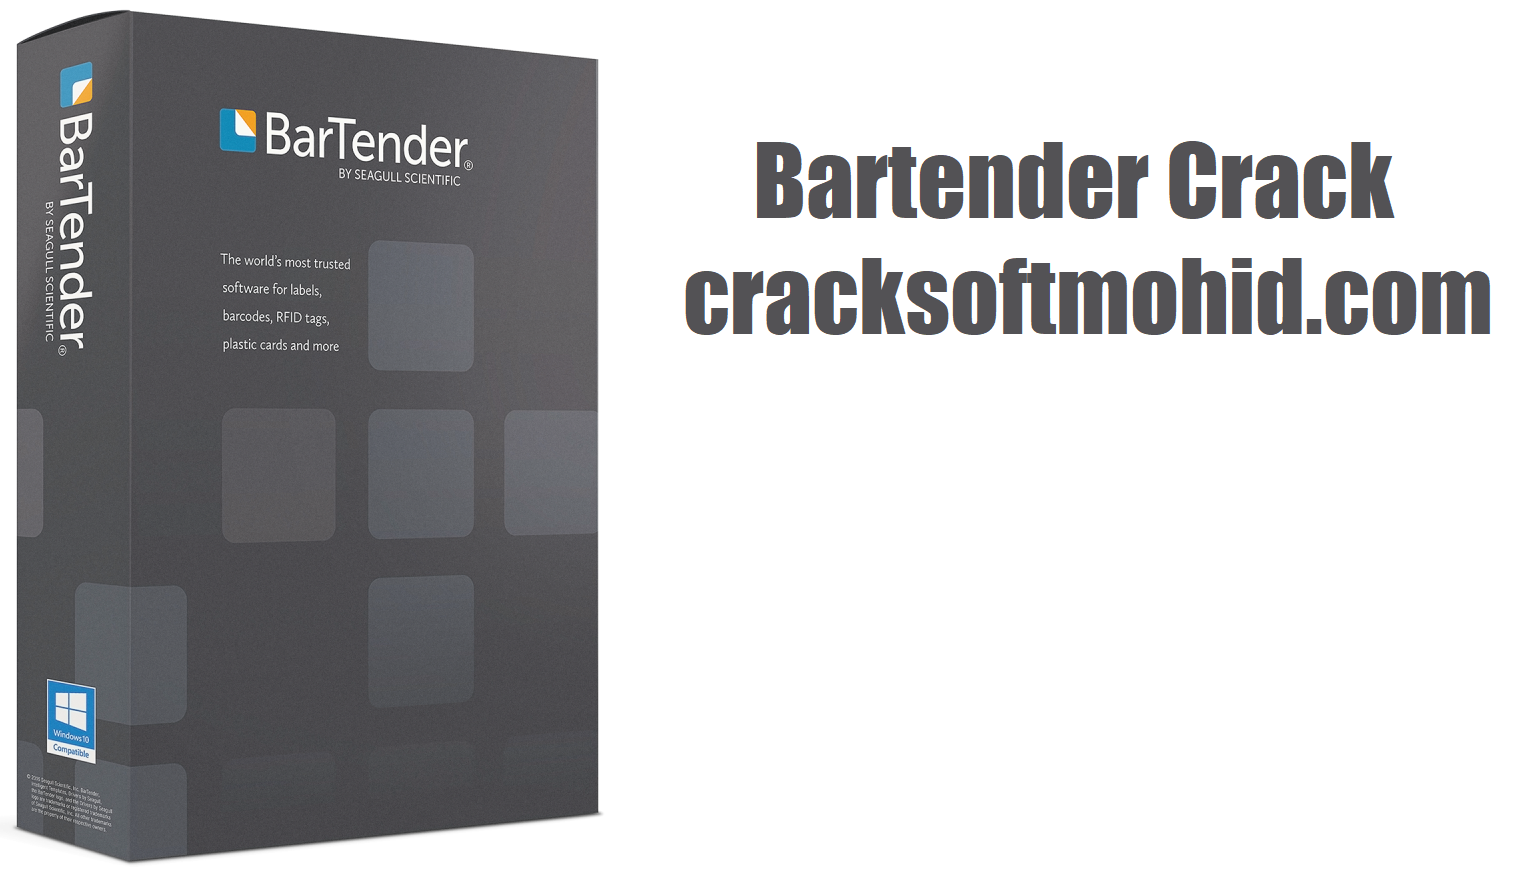 Bartender Crack